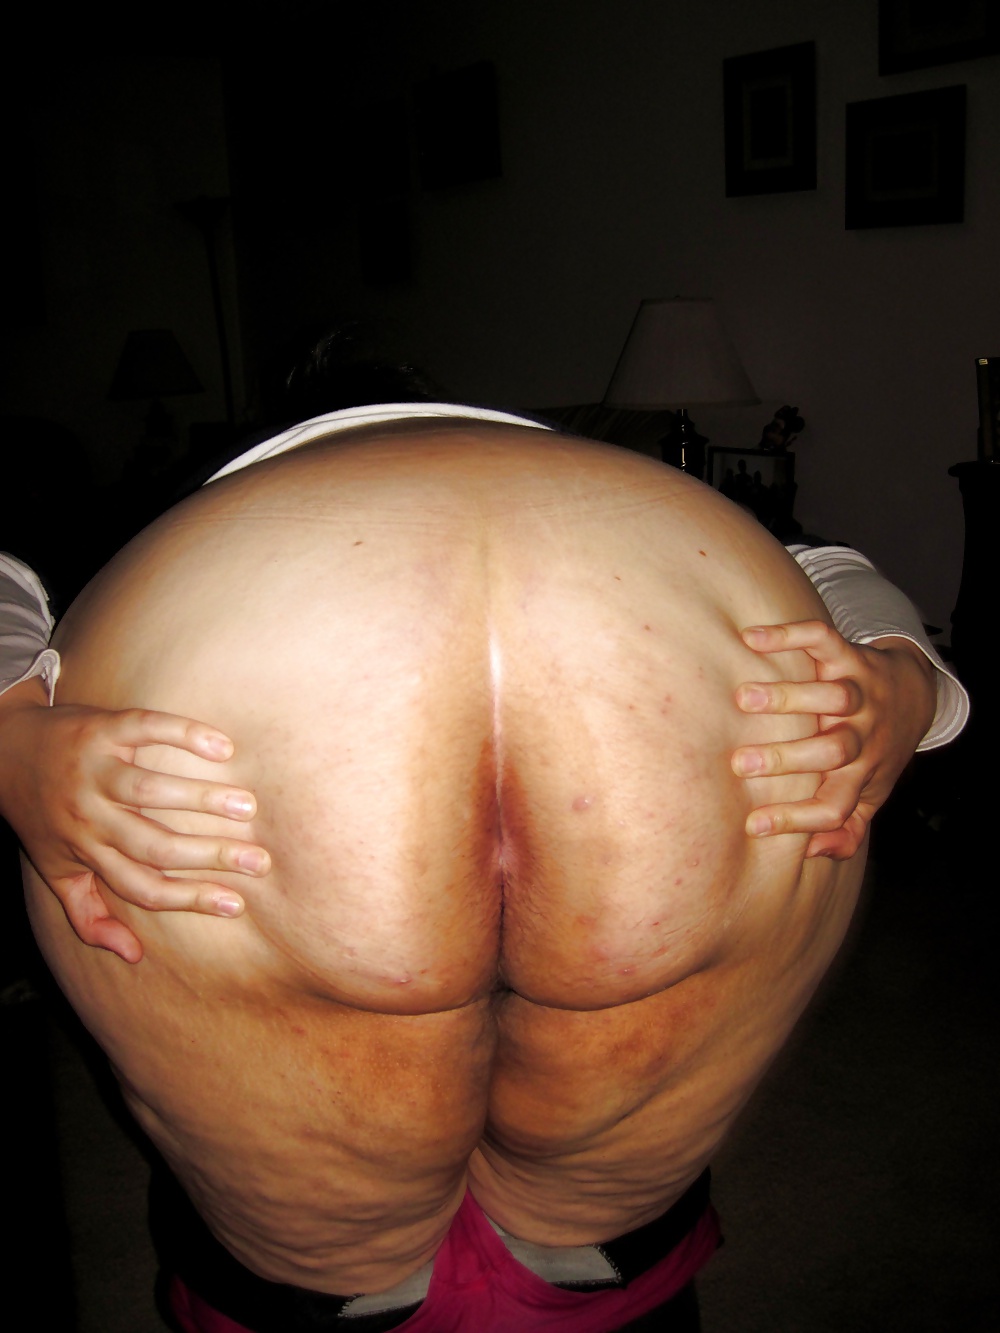 Porn Pics Delicious big butts